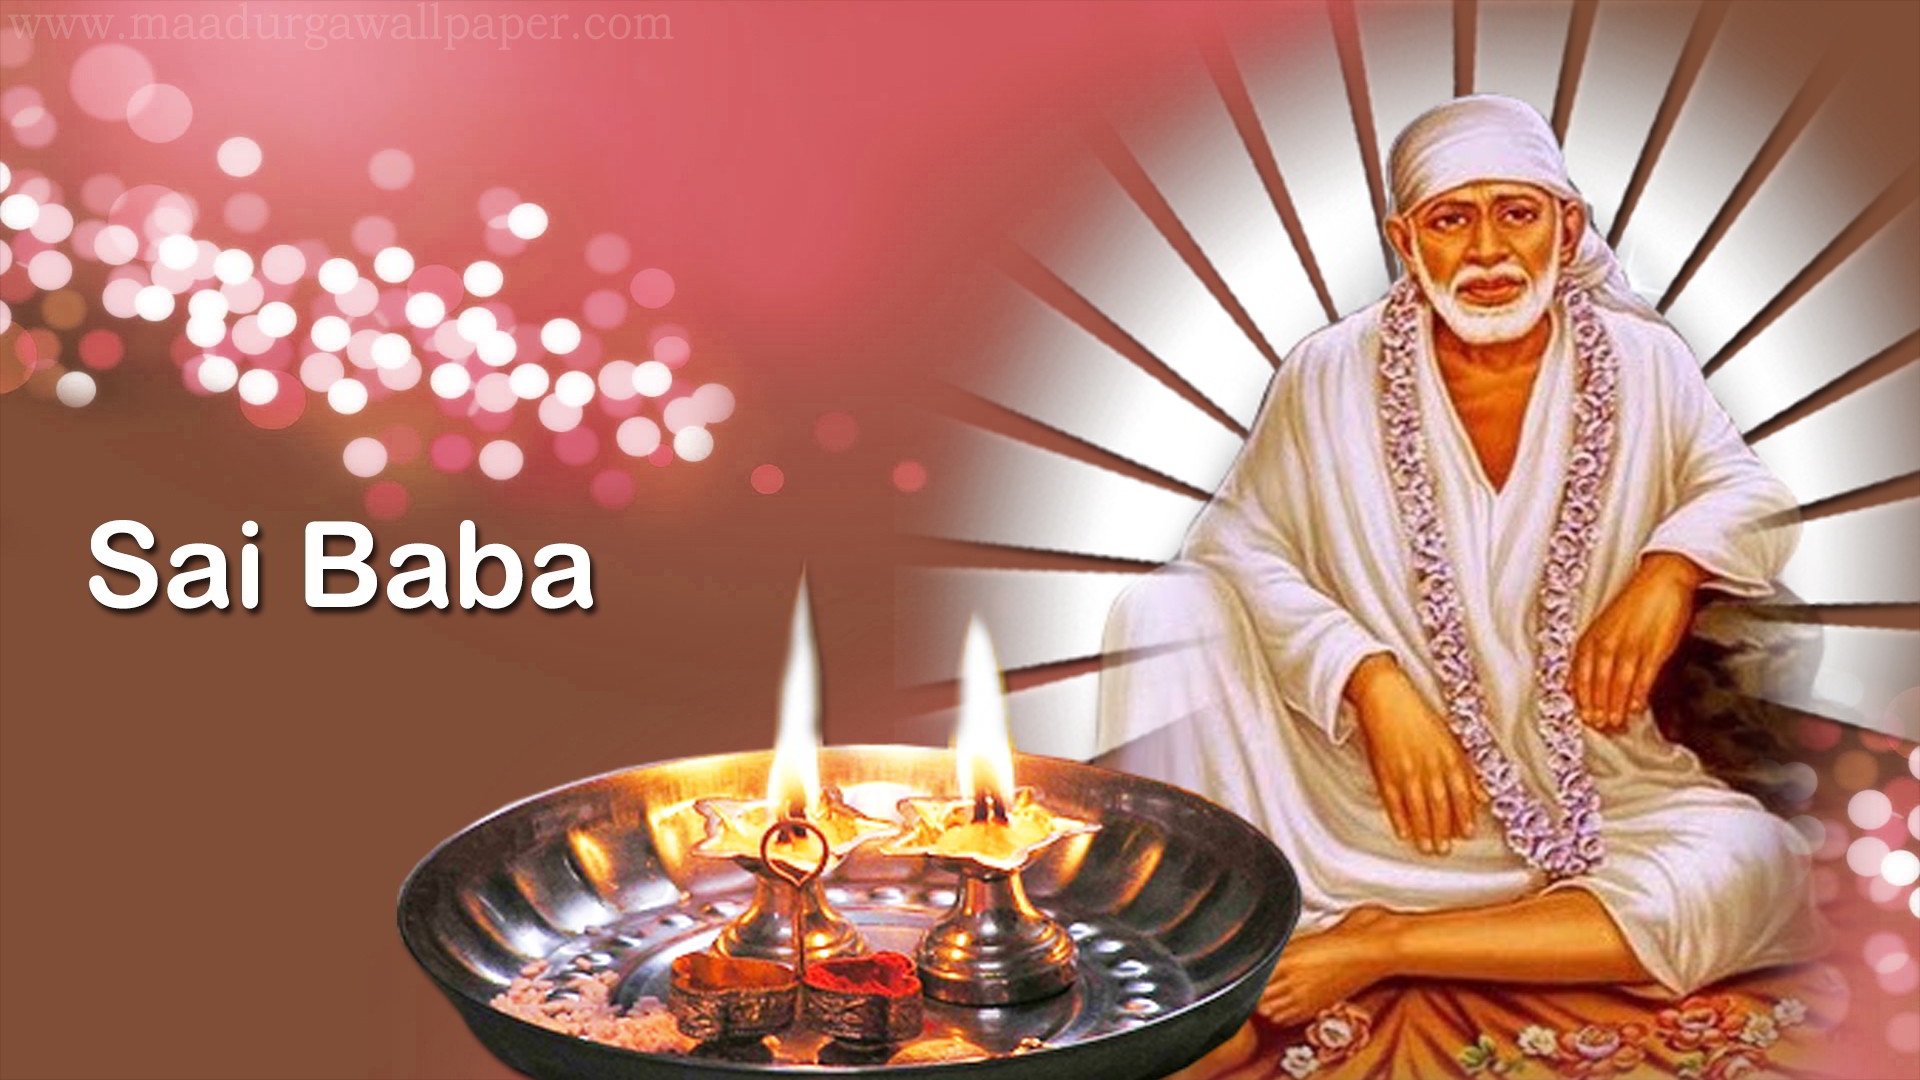 Sai Baba Live - Sai Baba - Devotional